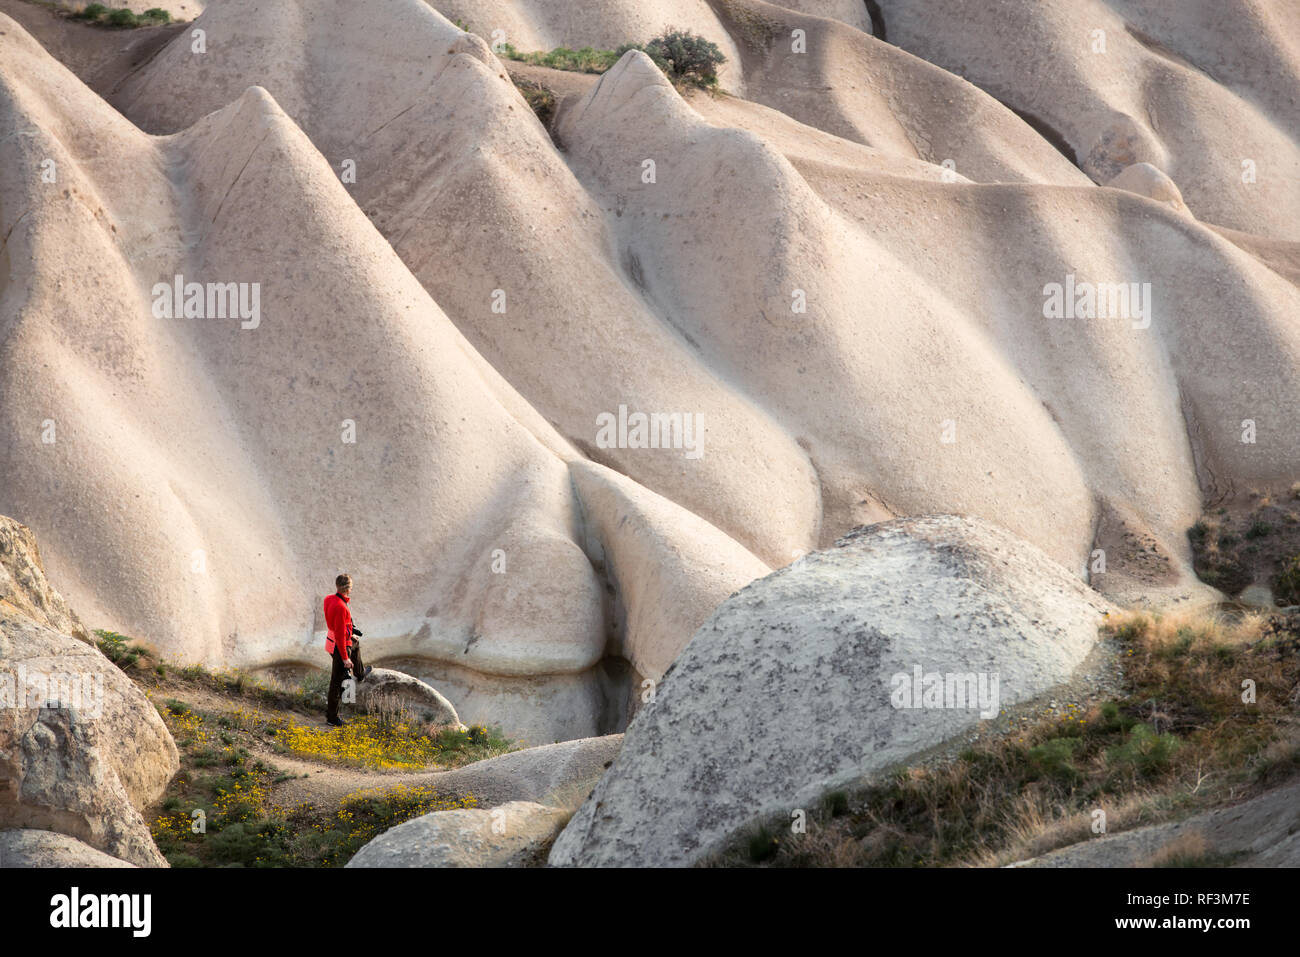 Giornata incredibile in Cappadocia montagne, Turchia. Fotografo in giacca rossa prendendo foto di meravigliose colline. Fotografia di paesaggi Foto Stock